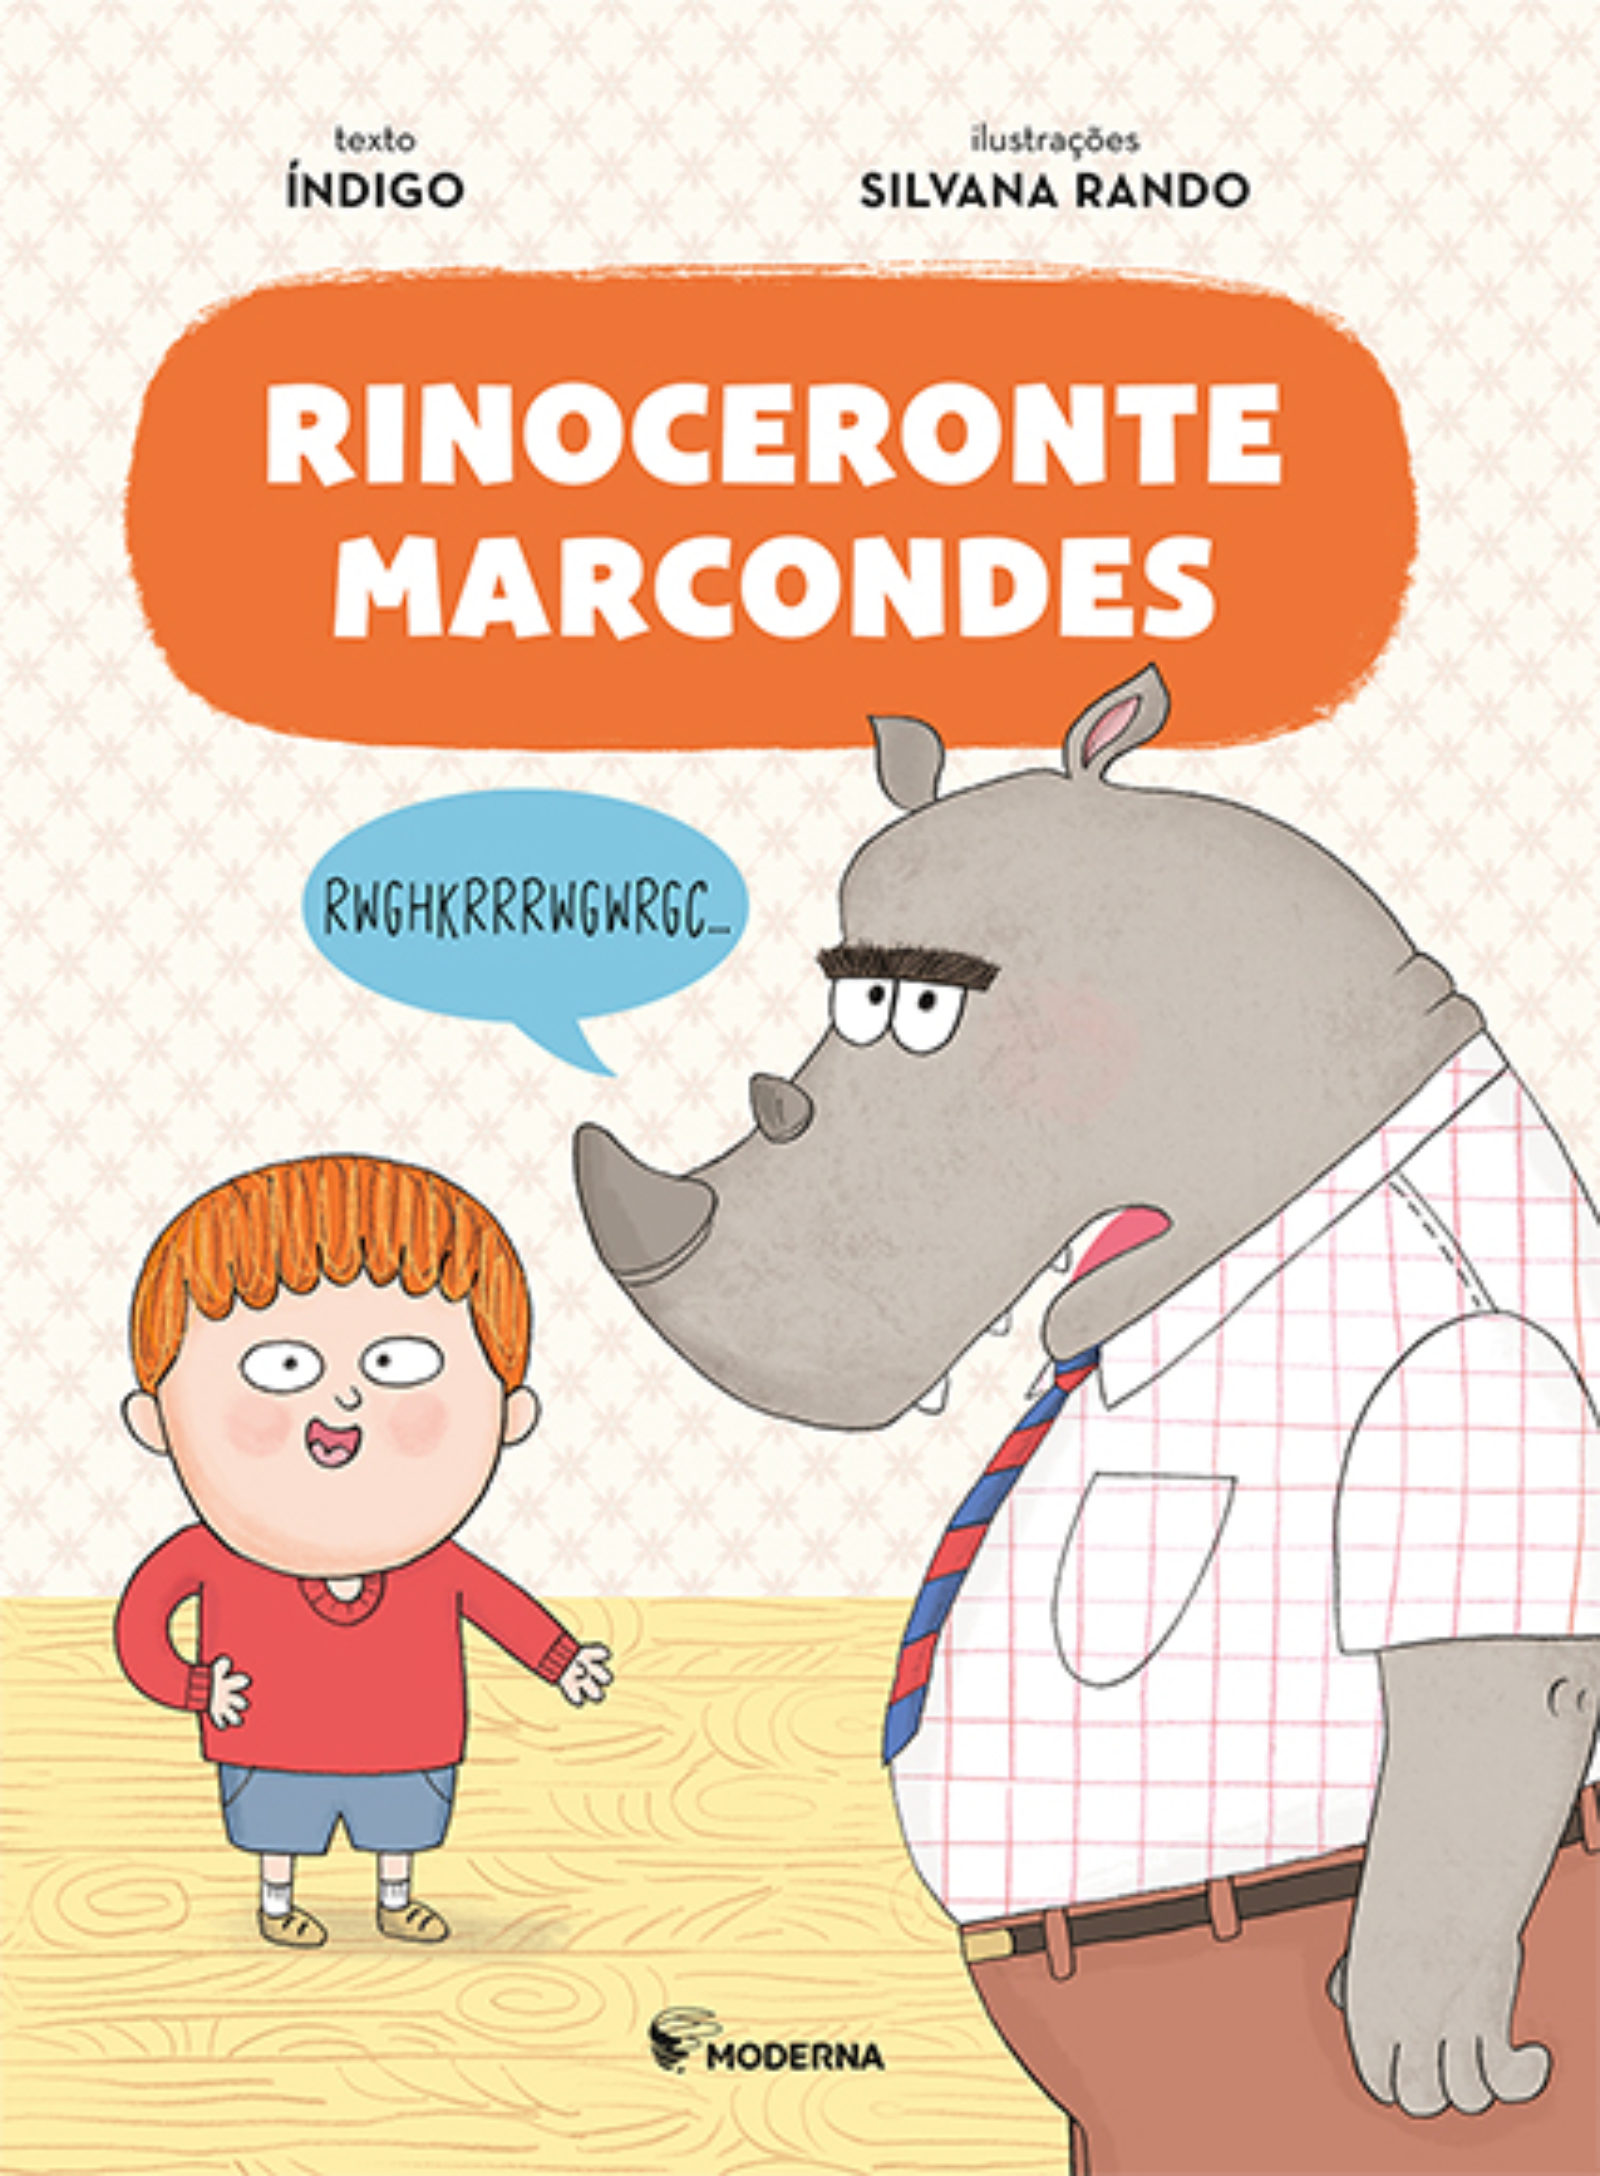 Adquirir seu exemplar de “Rinoceronte Marcondes” nunca foi tão fácil!